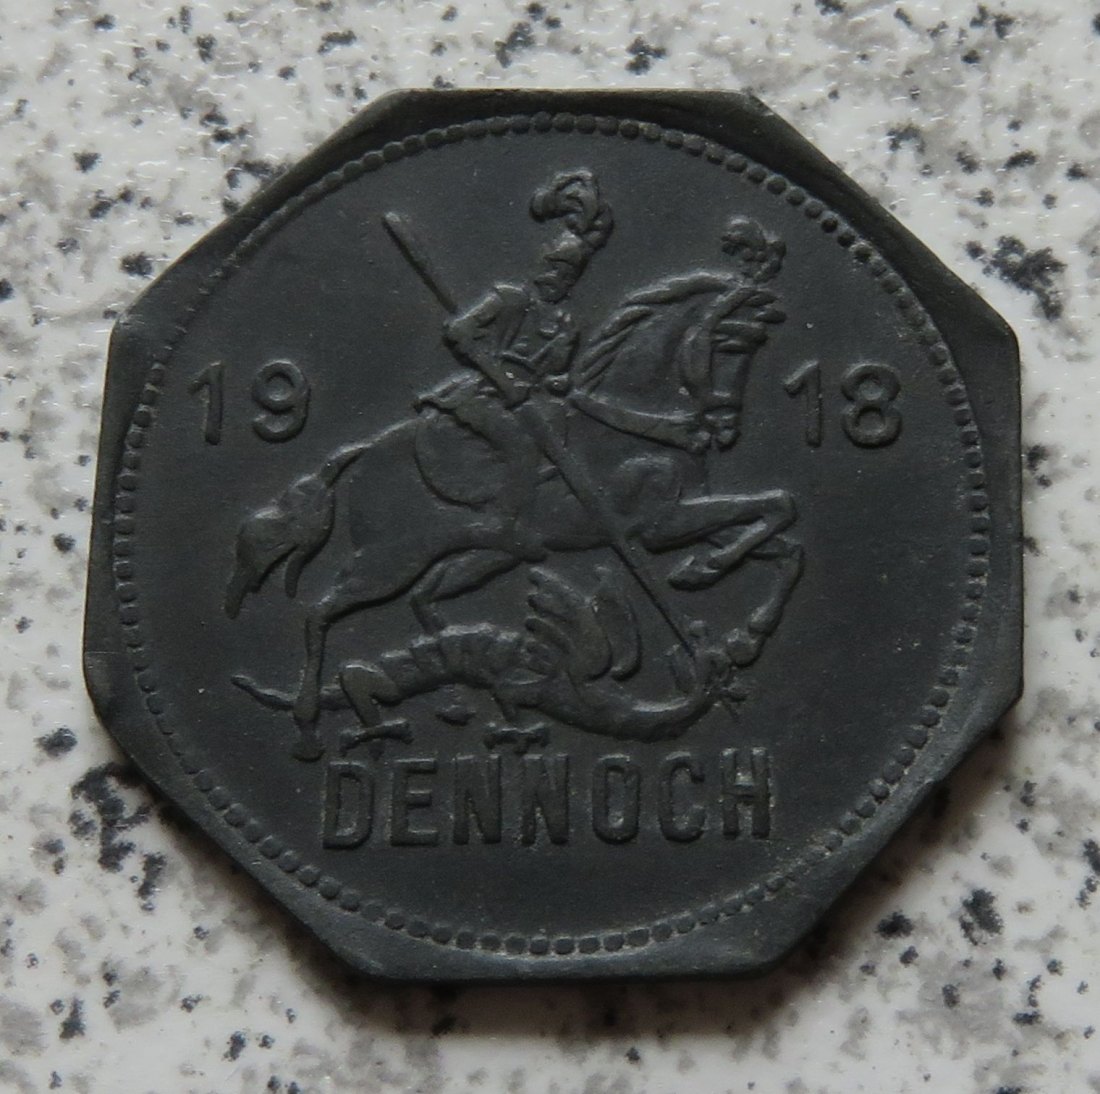  Mansfeldsche Gewerkschaft Eisleben 50 Pfennig 1918   